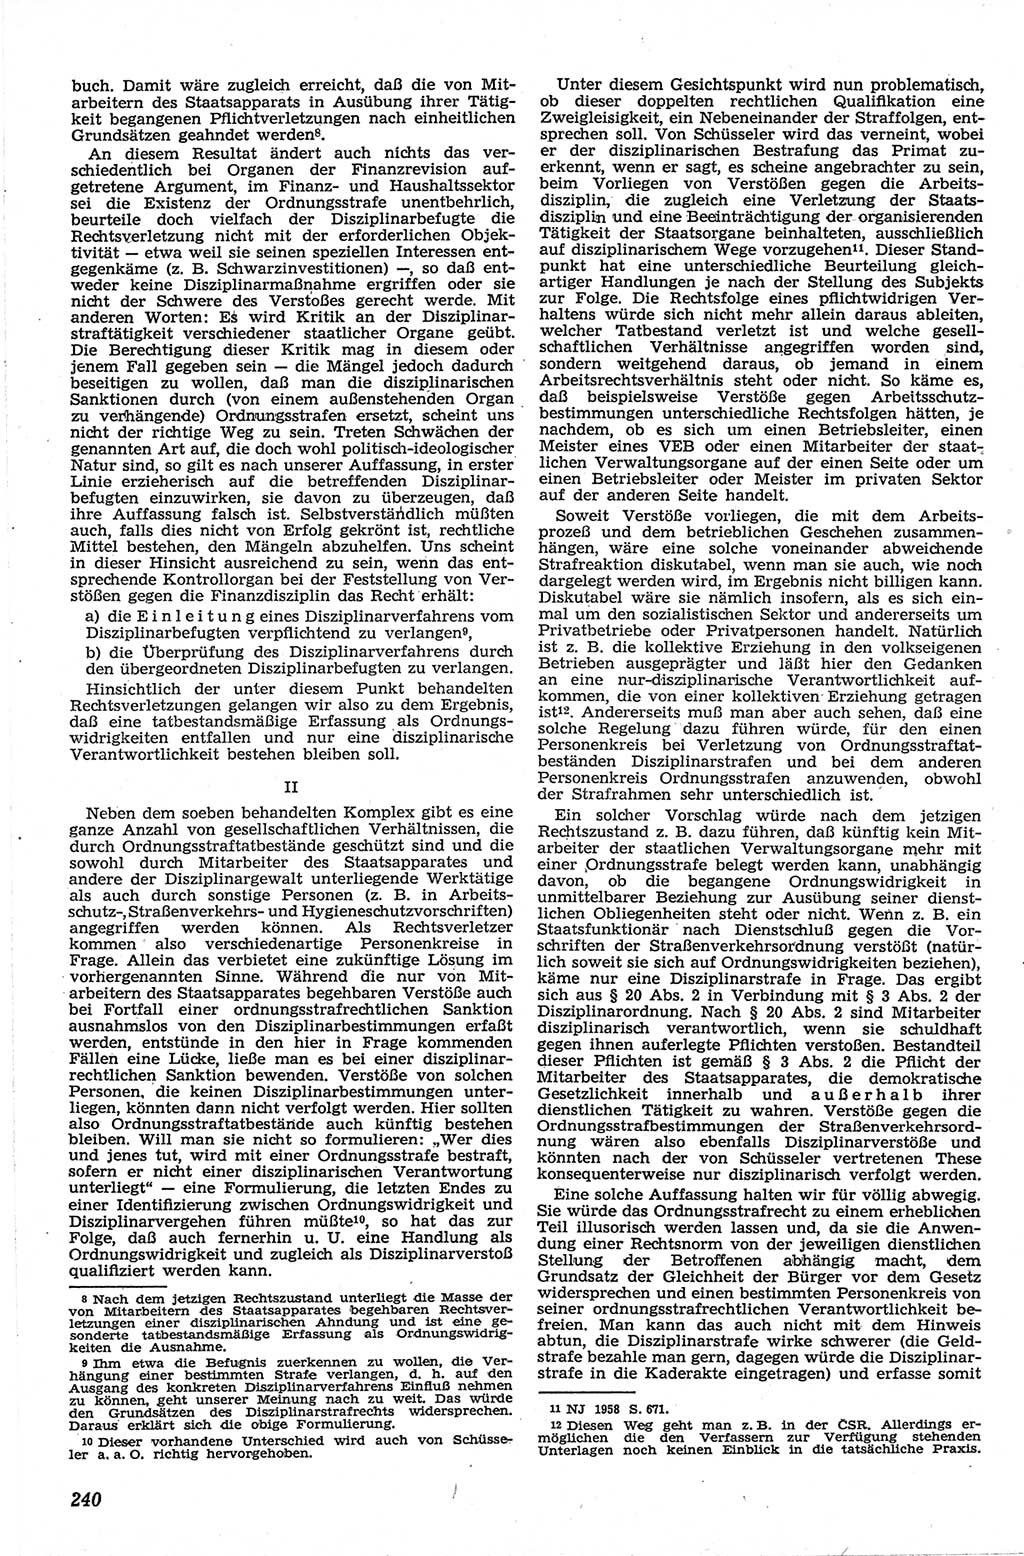 Neue Justiz (NJ), Zeitschrift für Recht und Rechtswissenschaft [Deutsche Demokratische Republik (DDR)], 13. Jahrgang 1959, Seite 240 (NJ DDR 1959, S. 240)